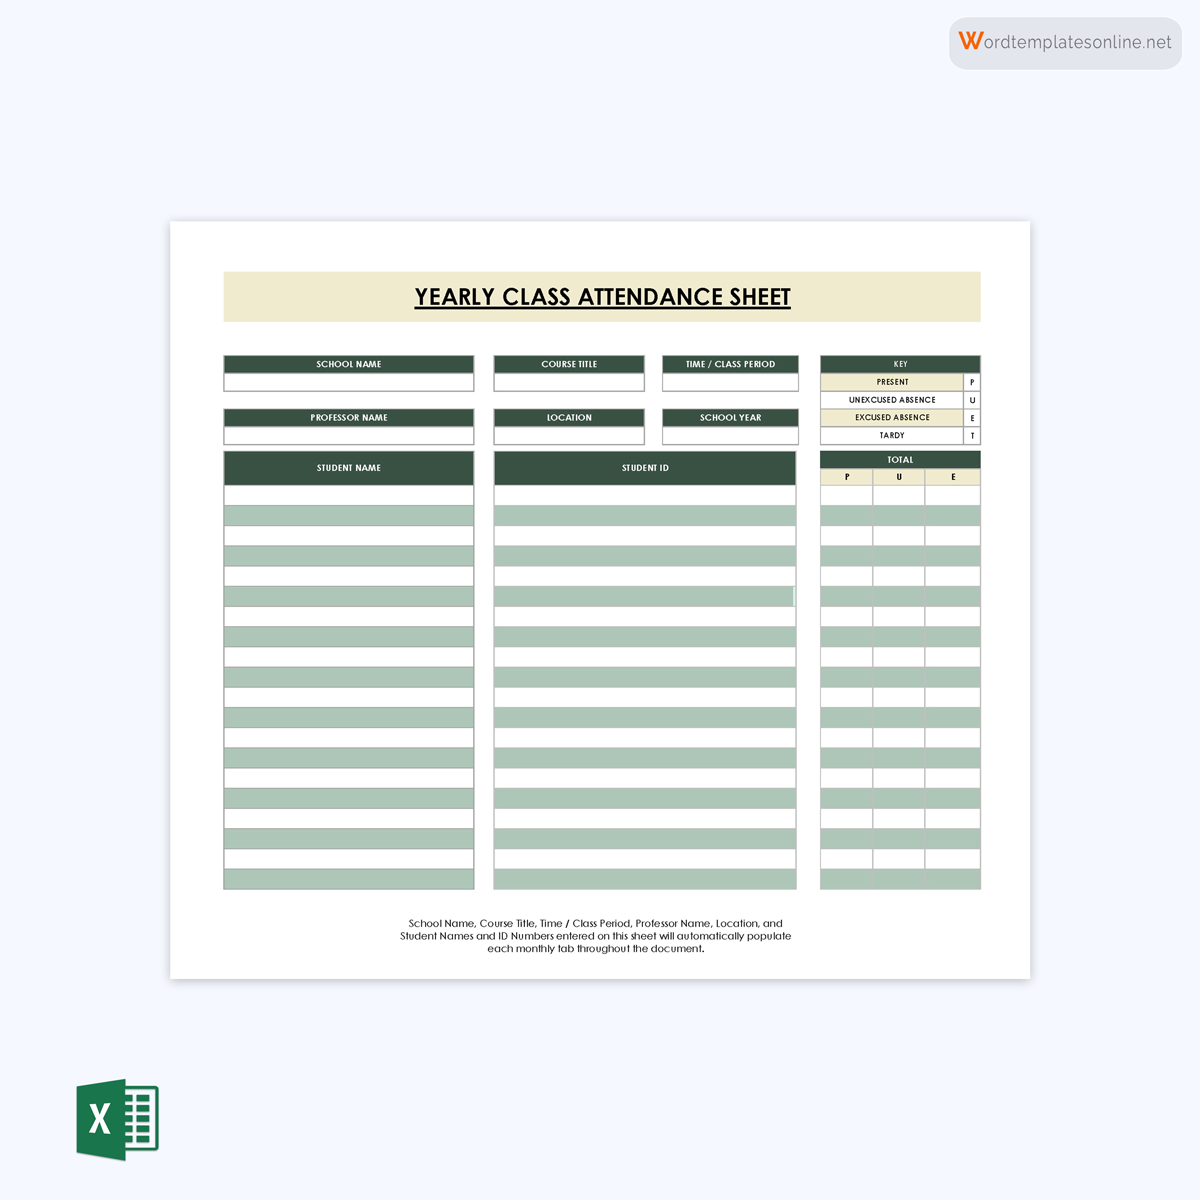 Image of Attendance Sheet PDF
Attendance Sheet PDF
